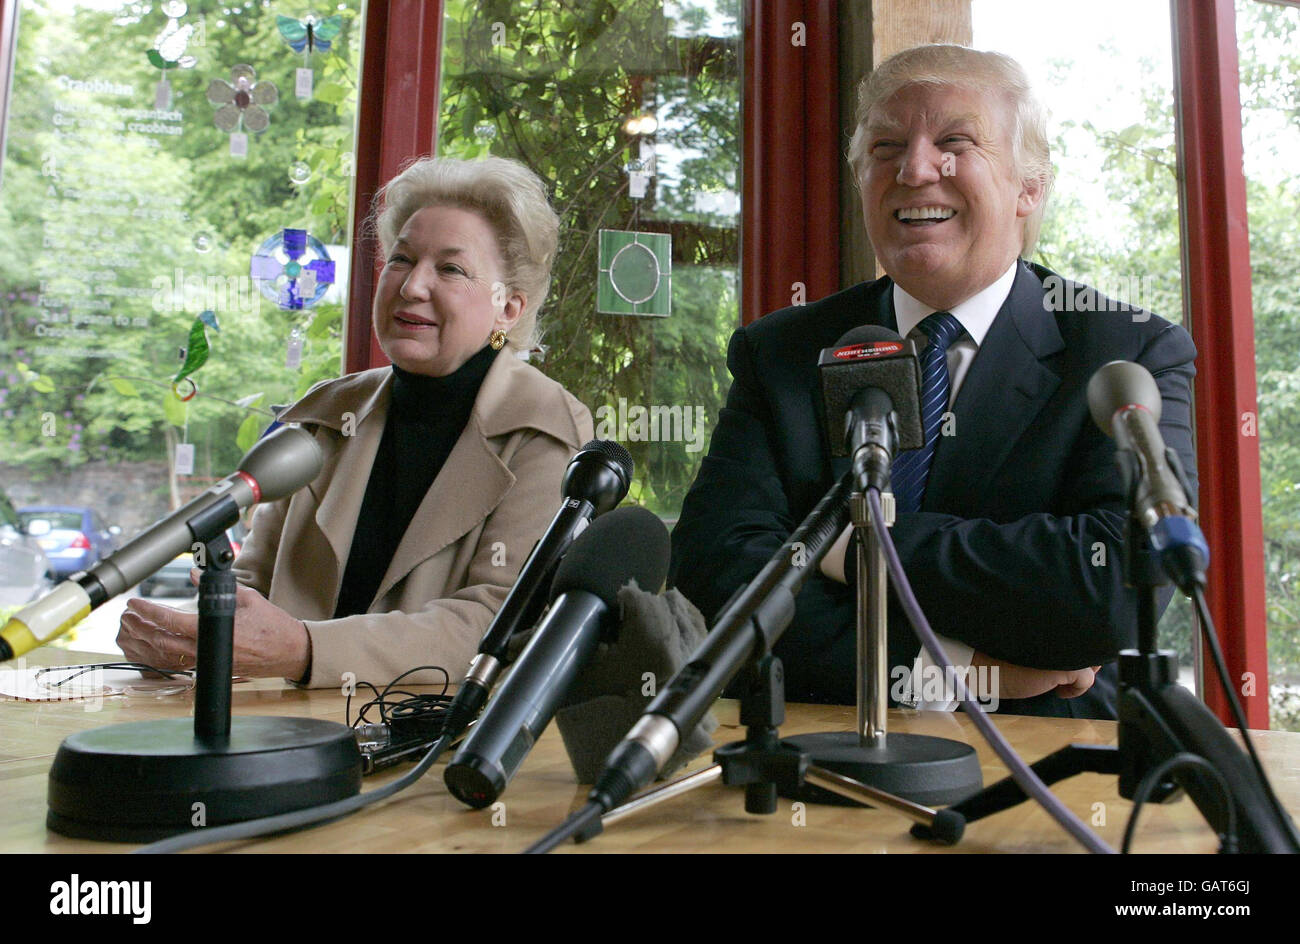 Tycoon Donald Trump mit Schwester Maryanne Trump Barry auf einer Pressekonferenz nach einem Besuch des Hauses in Tong auf der Isle of Lewis, wo seine Mutter vor ihrer Emigration in die Vereinigten Staaten aufgewachsen war. Stockfoto